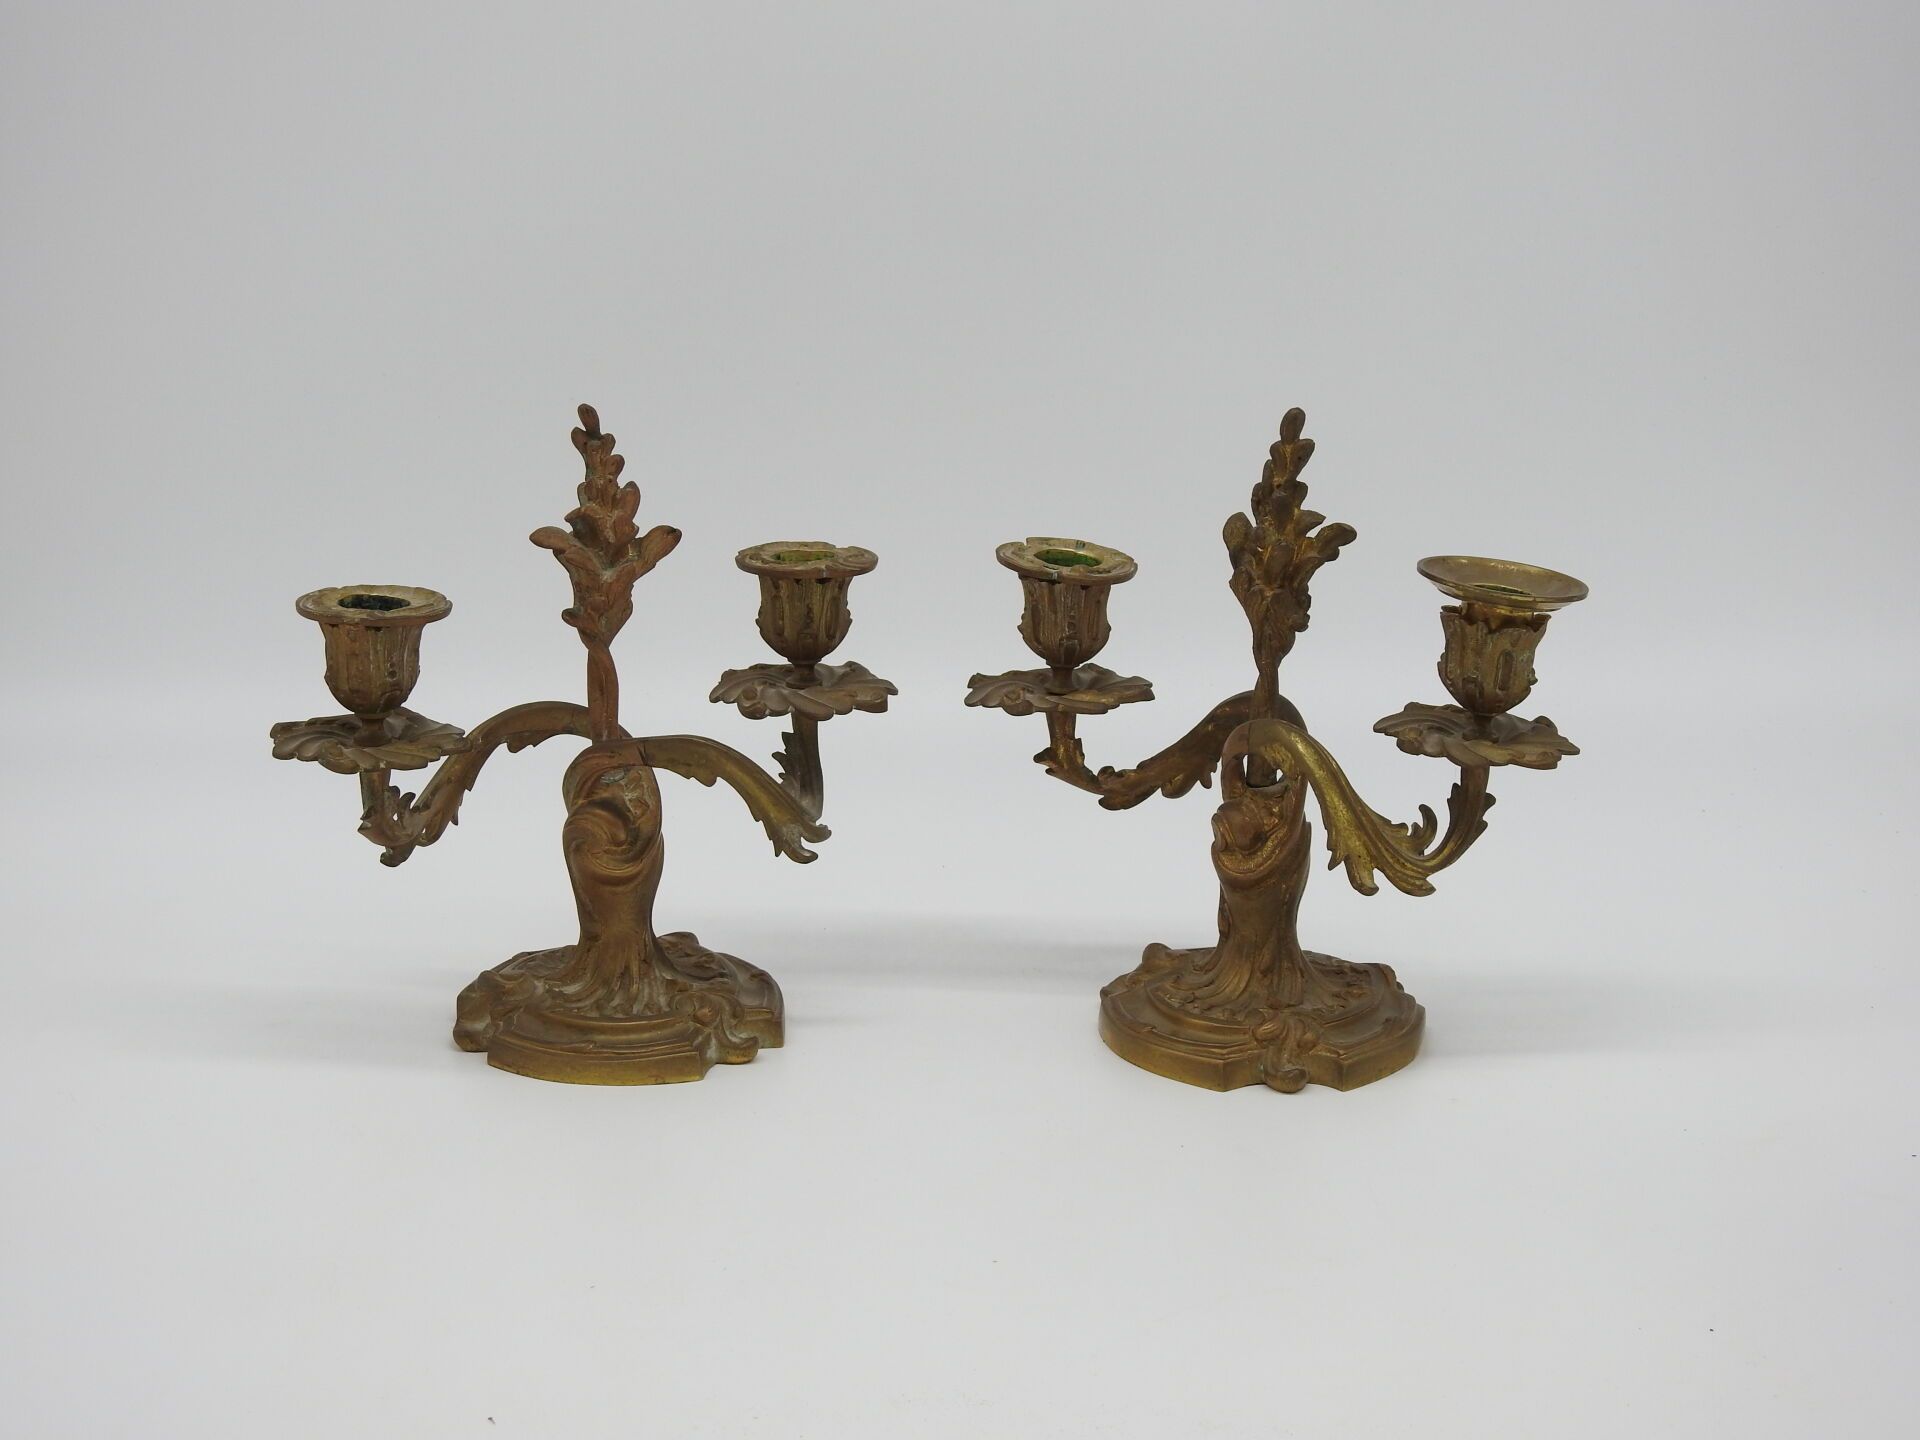 Null 一对有凹槽的青铜烛台，有两个罗盖尔风格的灯臂。19世纪。高22.5厘米，长21厘米。有些磨损，一个非原装的灯芯。